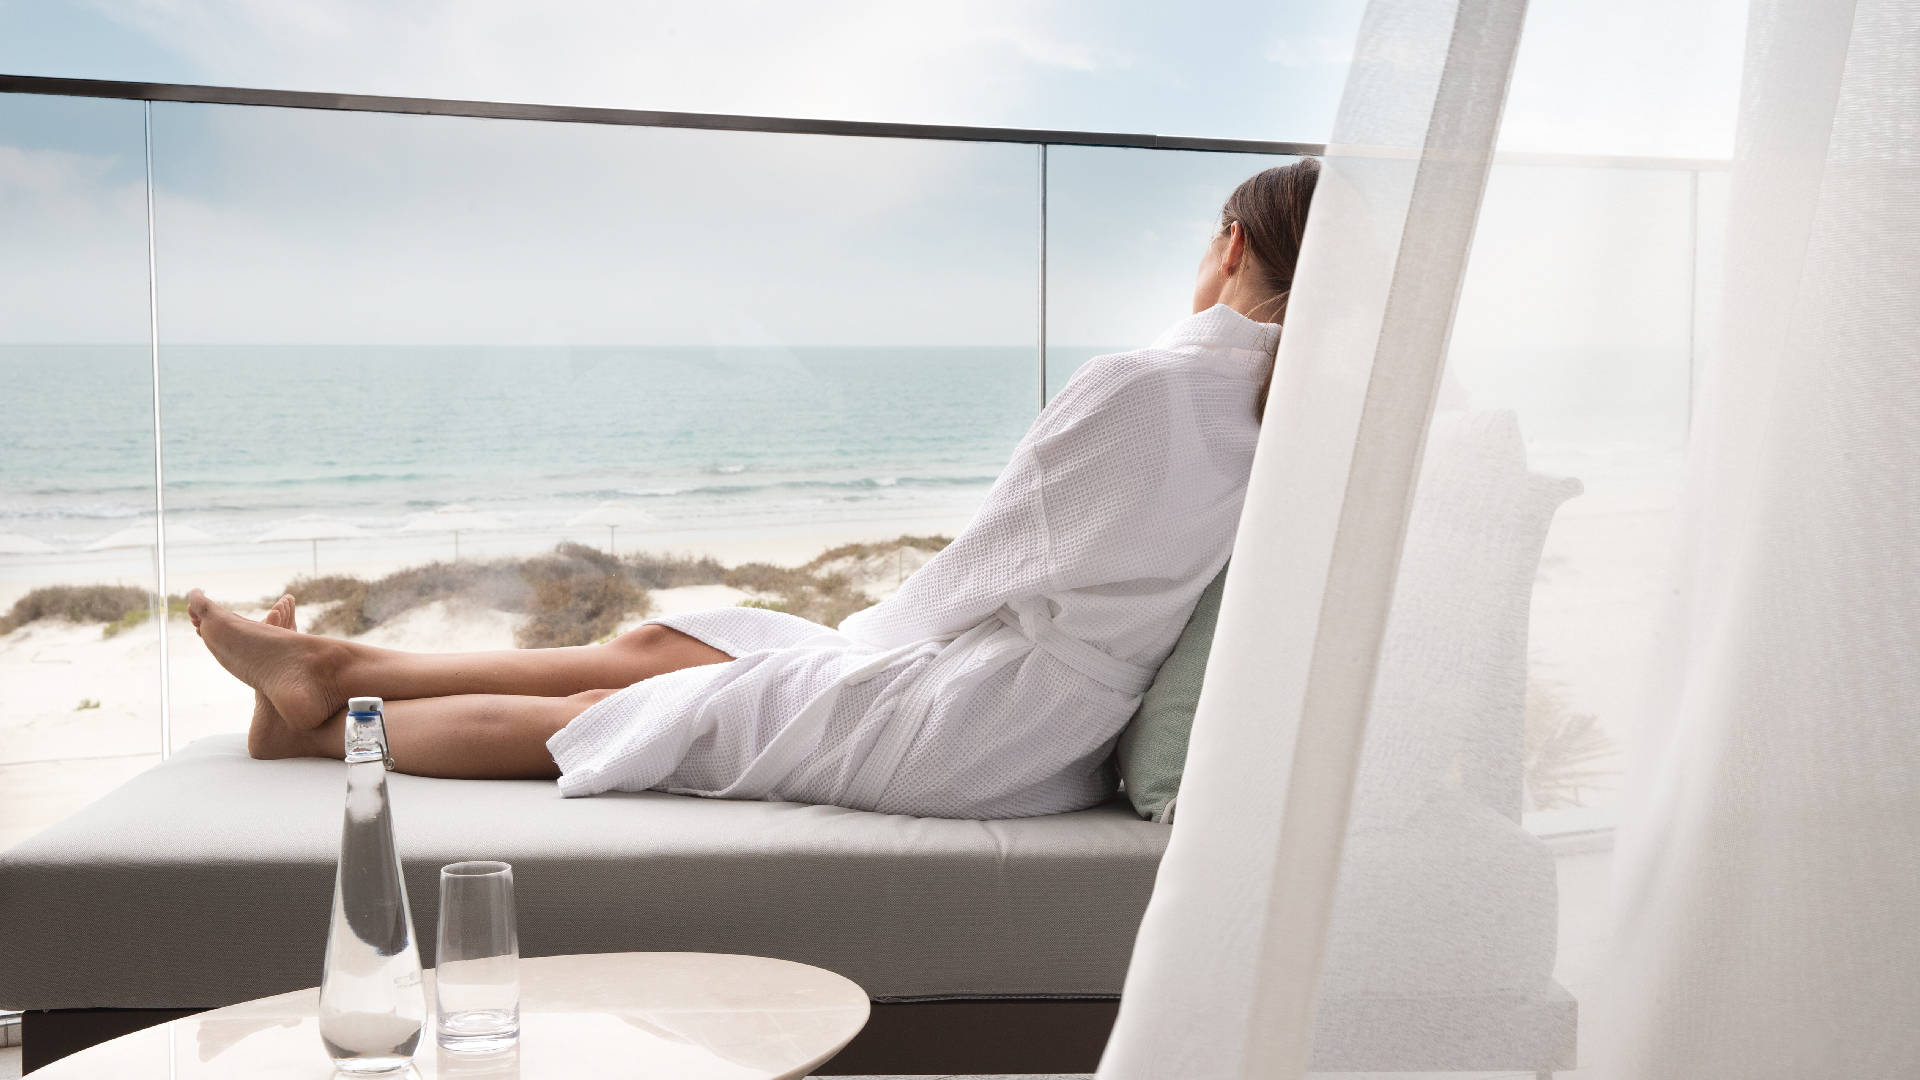 Jumeirah at Saadiyat Island Resort - Enjoying her suite view